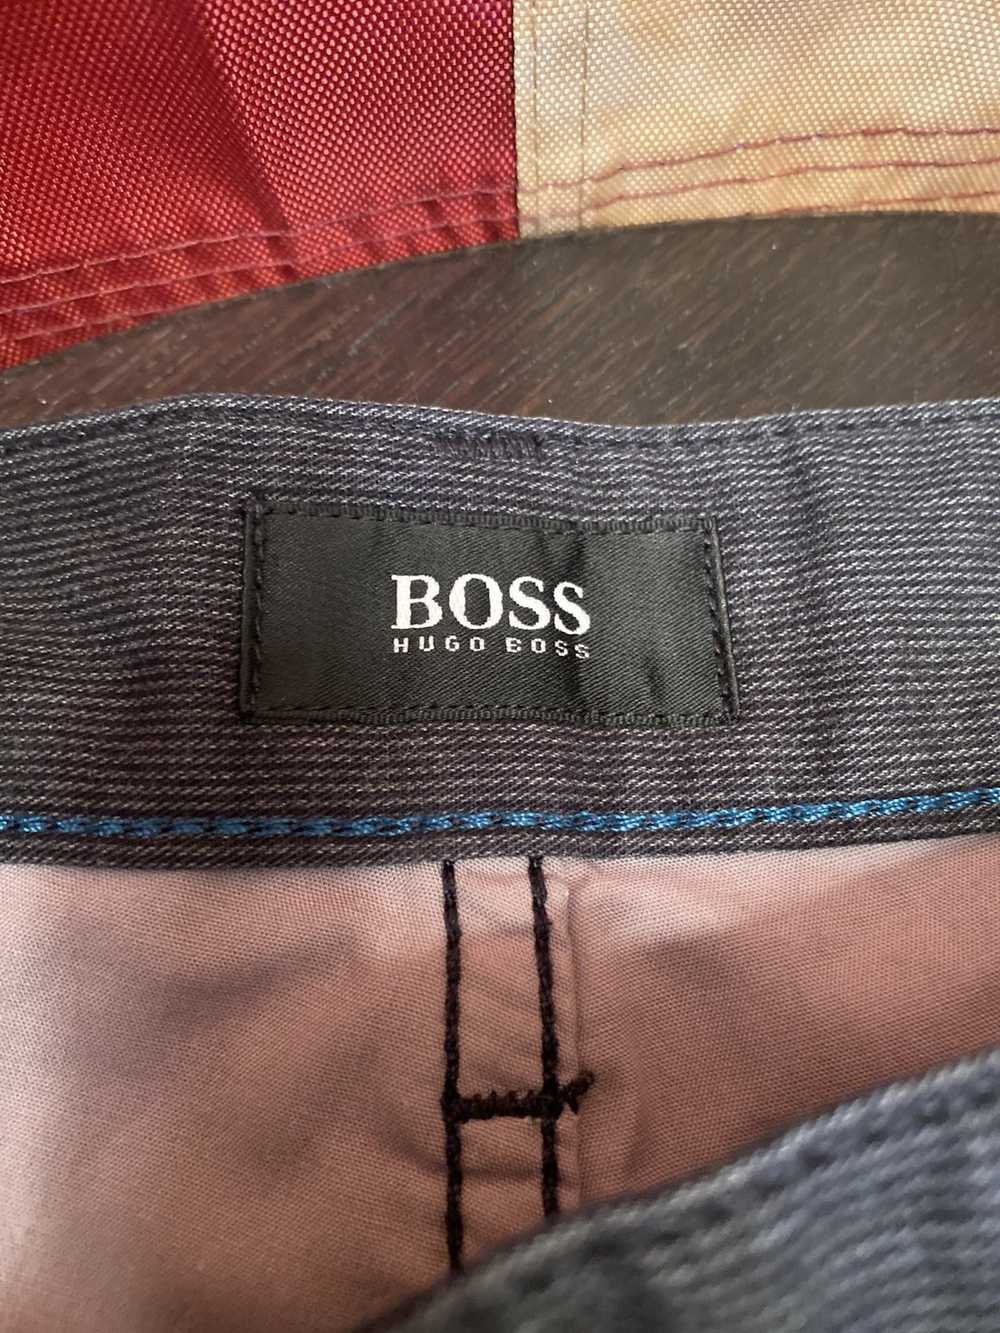 Hugo Boss Hugo Boss jeans - image 4